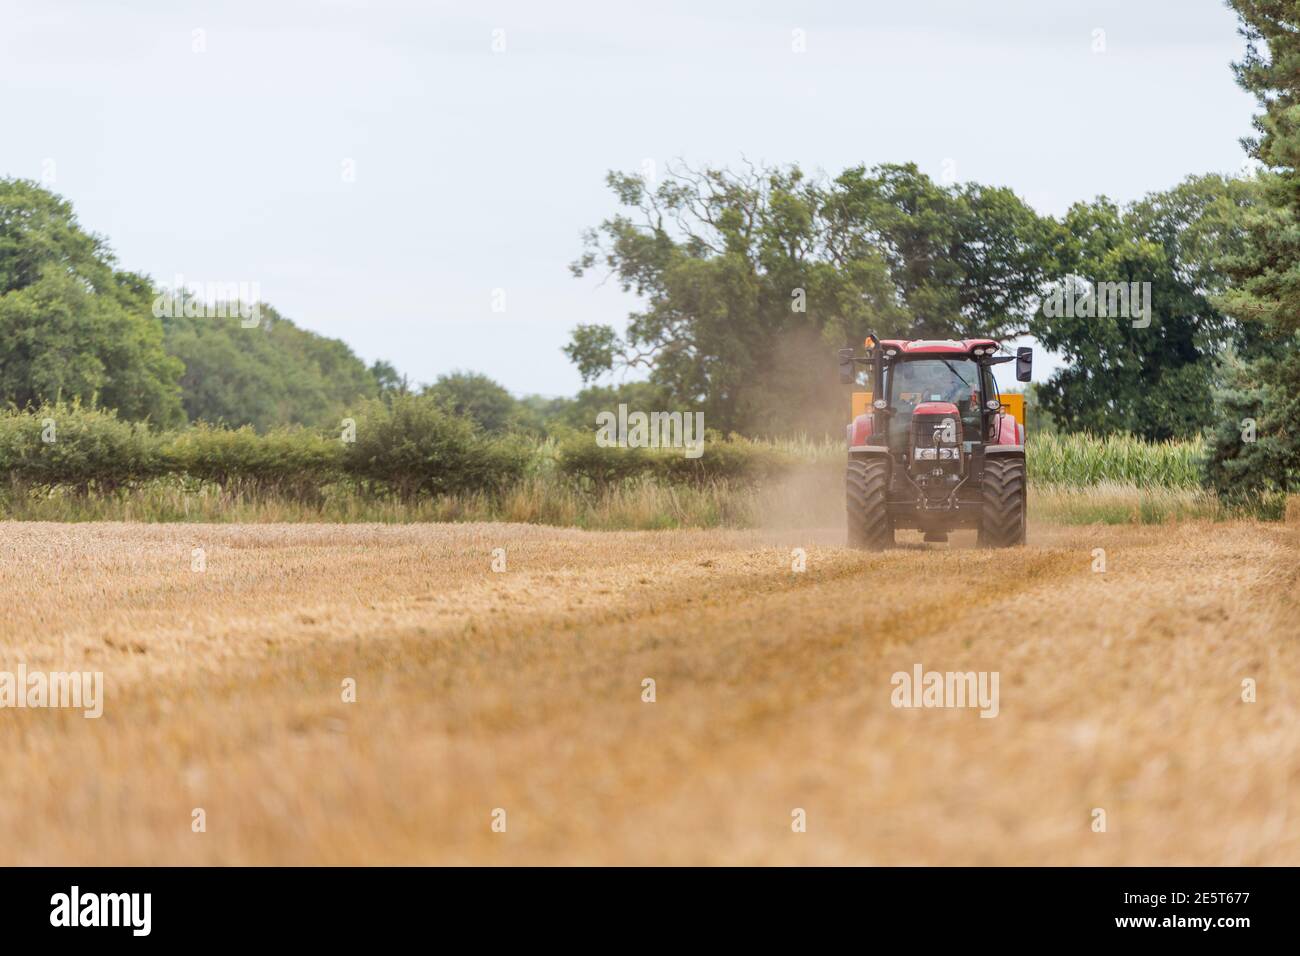 Woodbridge, Suffolk UK August 02 2020: Mähdrescher erntet reifen Weizen - Landwirtschaft, Landwirtschaft, Lebensmittel, Erntekonzept Stockfoto